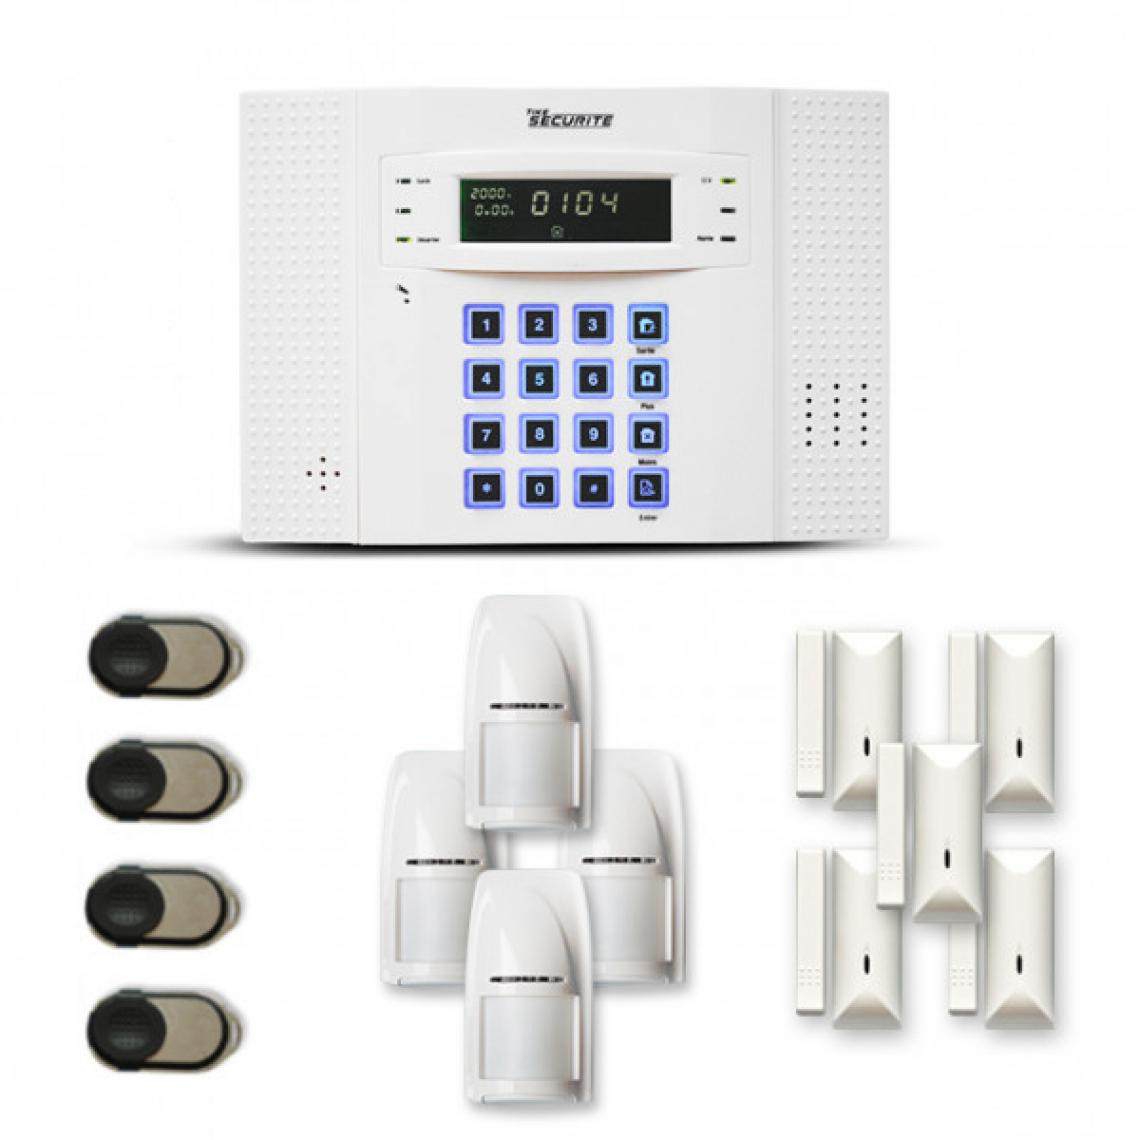 Tike Securite - Alarme maison sans fil DNB18 Compatible Box internet - Alarme connectée